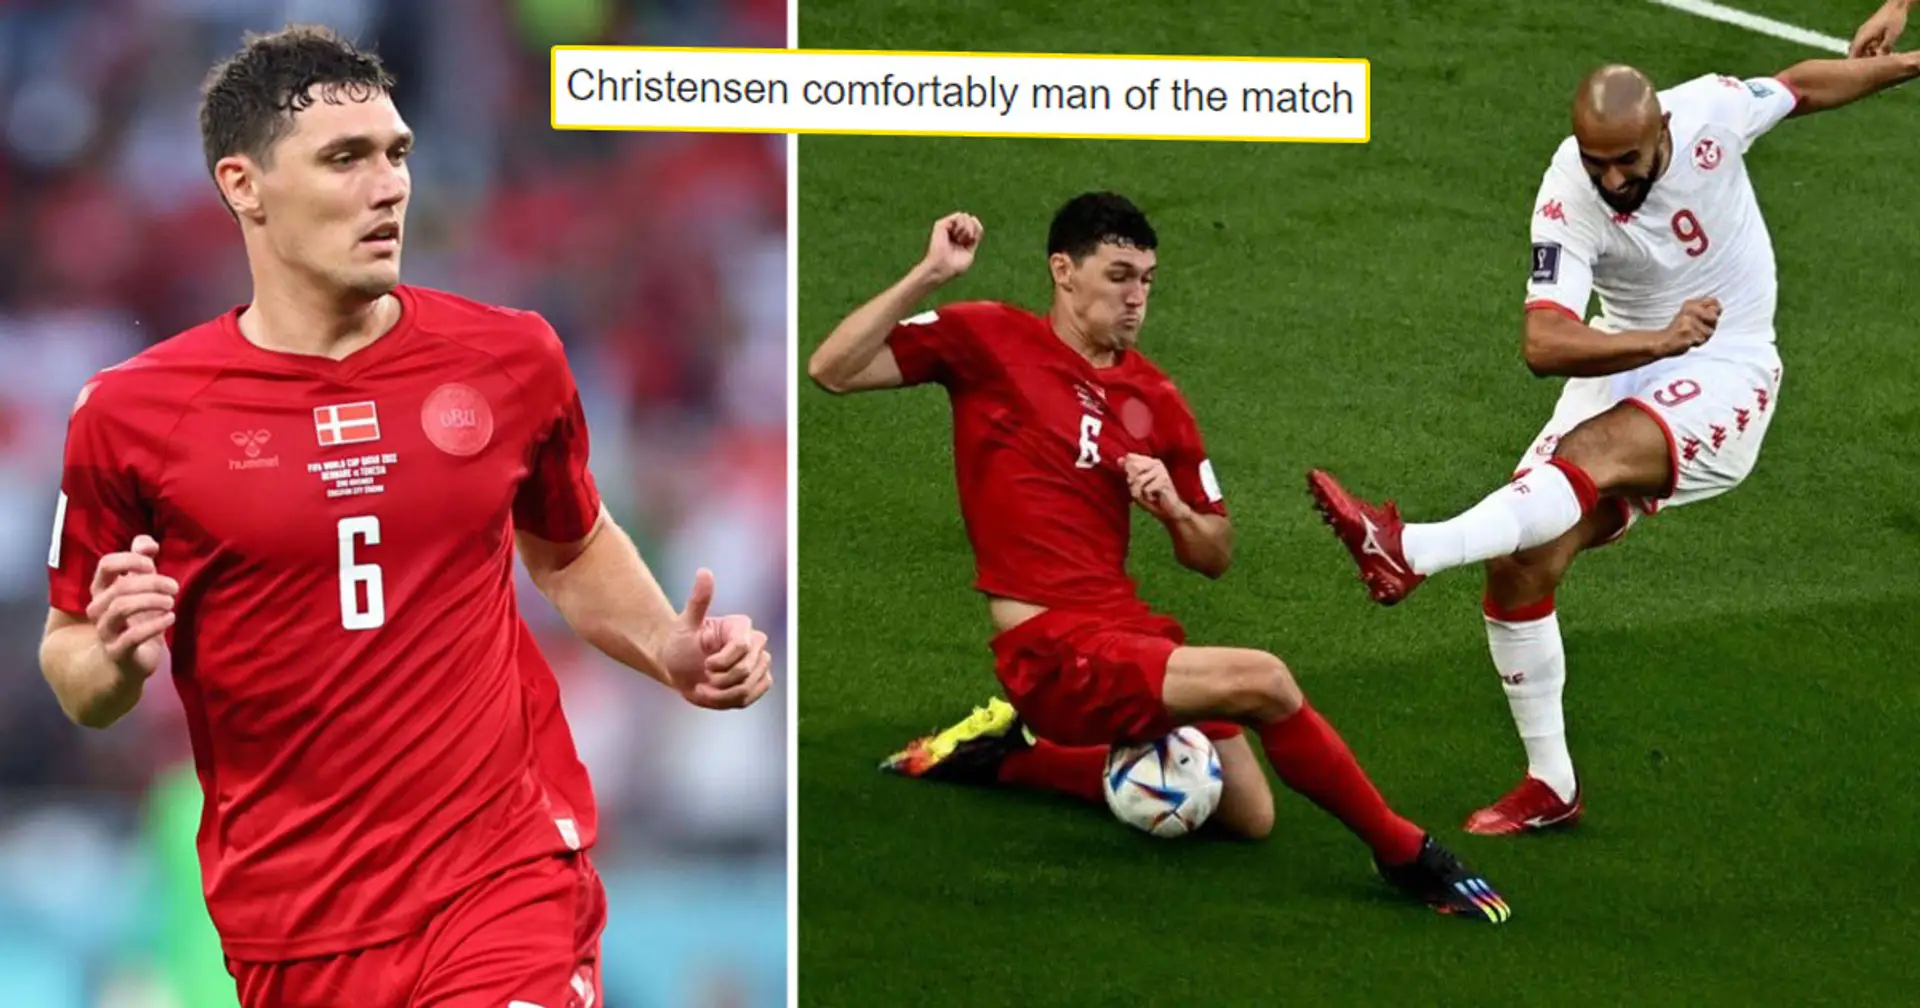 "Nous l'avons eu gratuitement": les fans réagissent au match solide de Christensen à la Coupe du monde